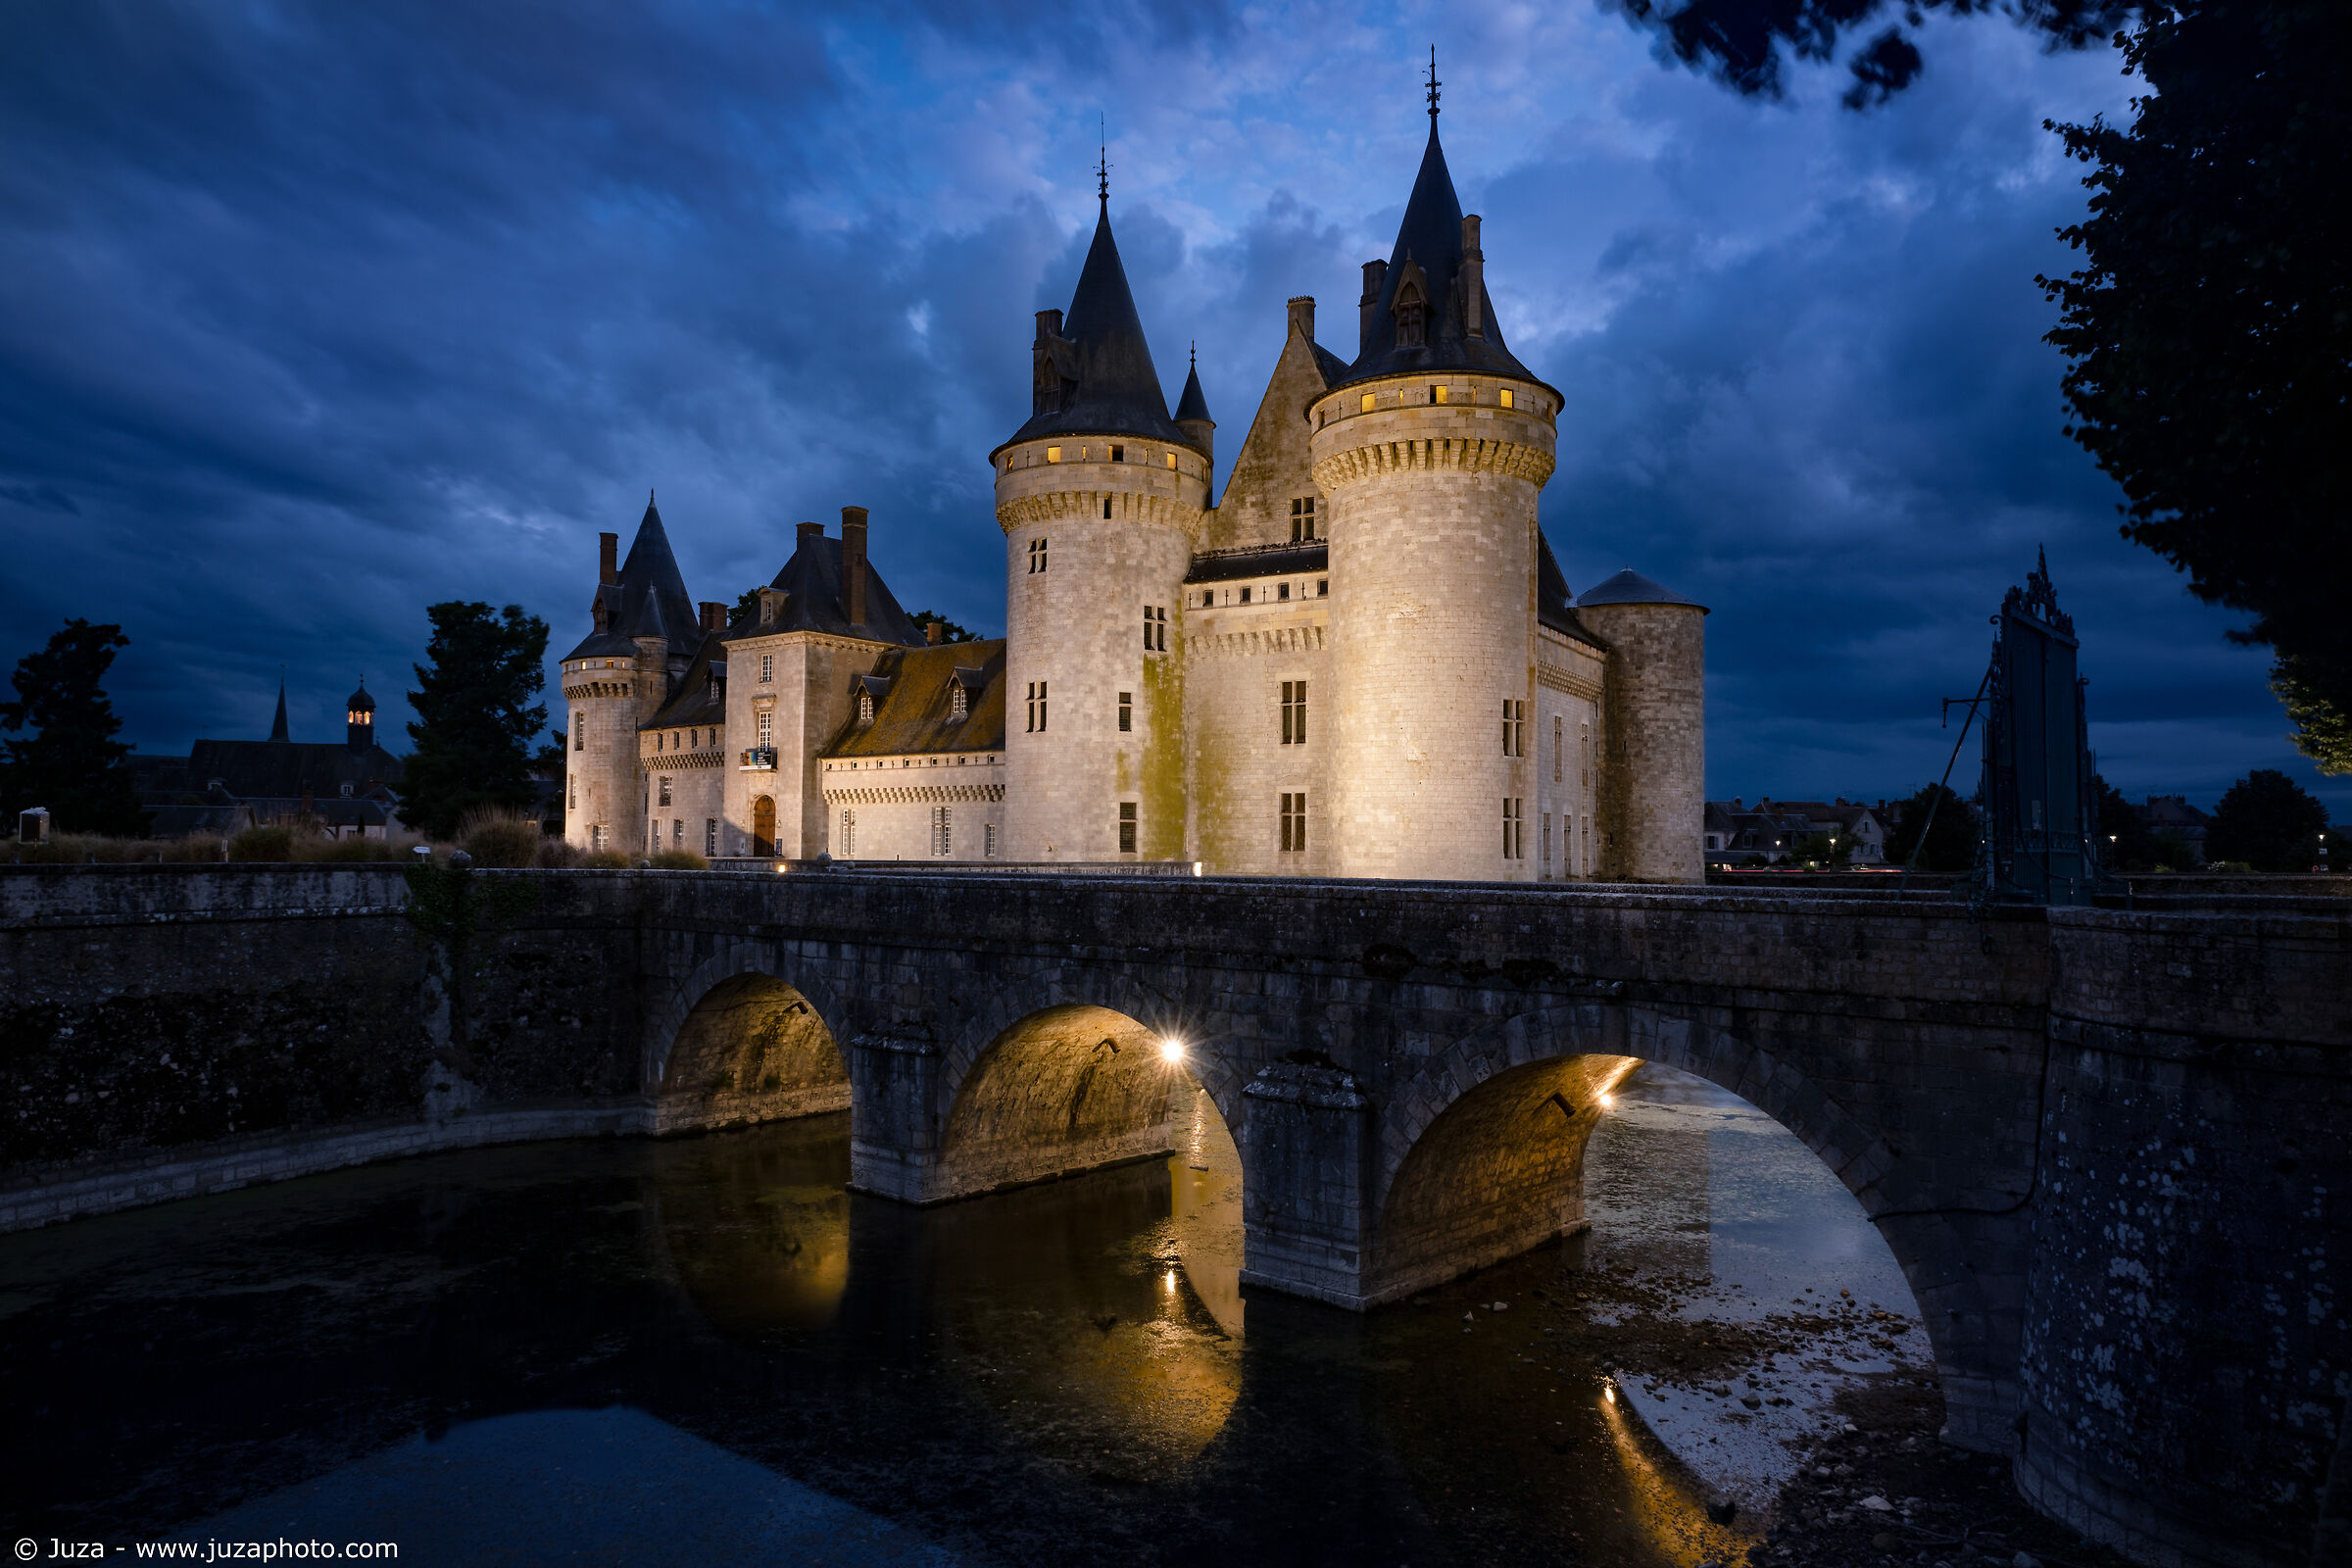 The Château de Sully-sur-Loire and its bridge...